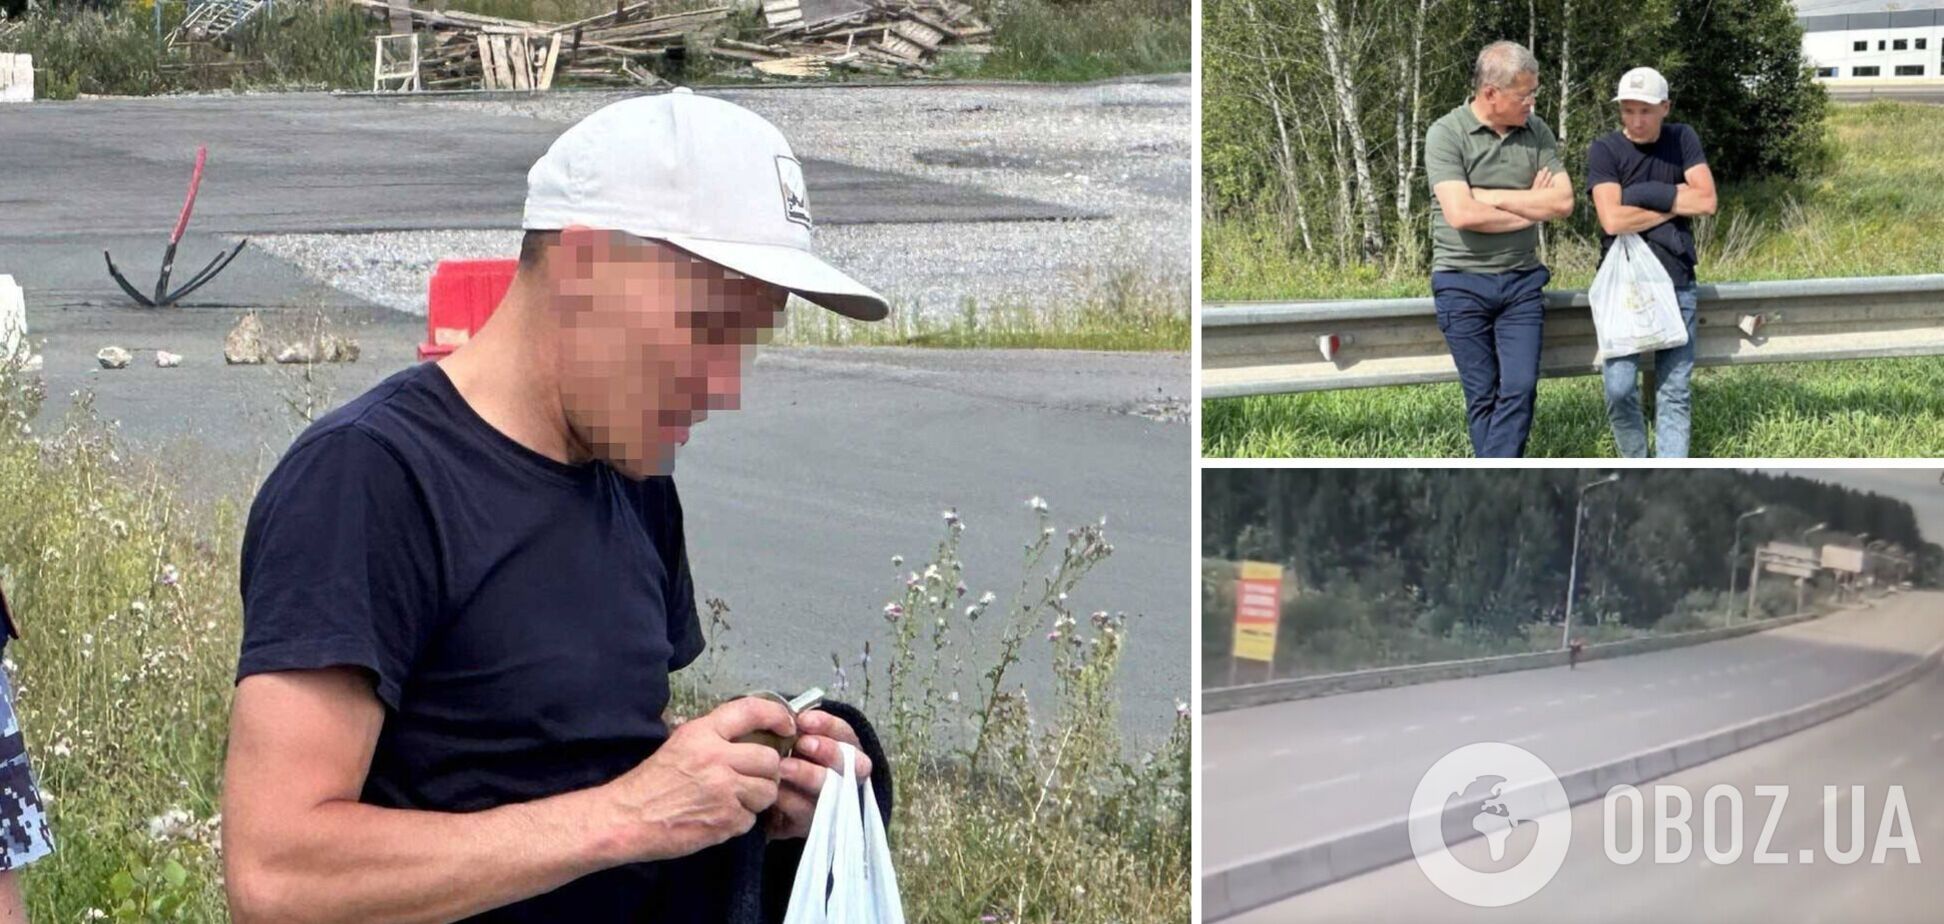 У російській Уфі перекривали шосе через дезертира з гранатою, який втік від психіатра. Фото і відео